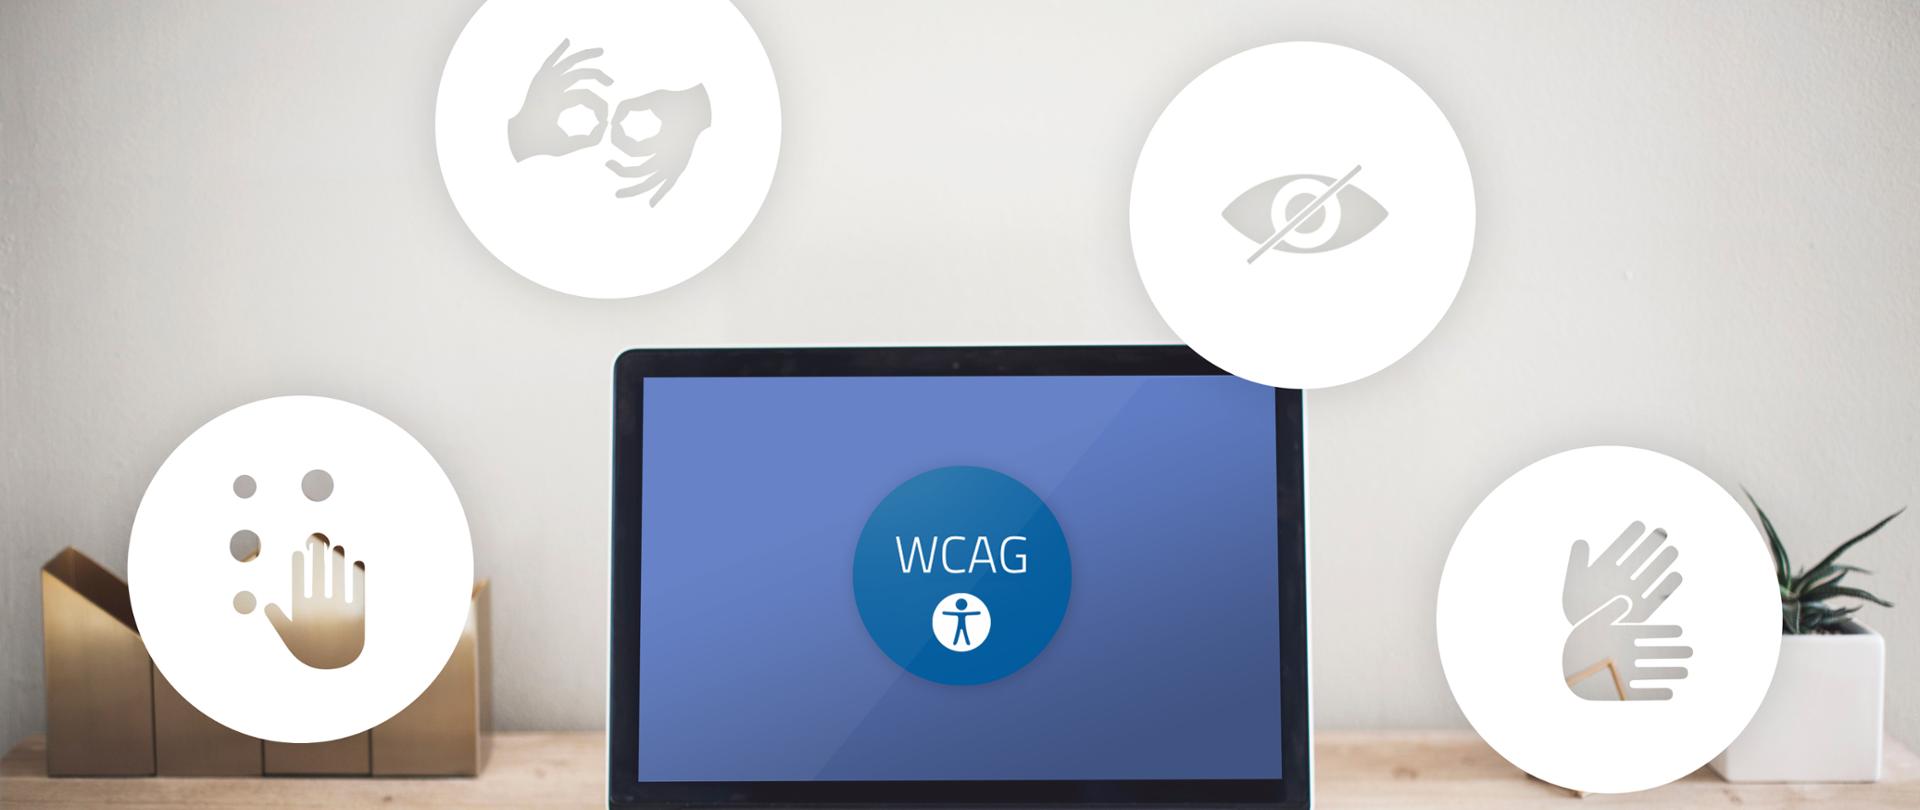 Na pierwszym planie stojący laptop na ekranie którego widoczne są litery WCAG. Wokół monitora widoczne są ikonki będące symbolami niepełnosprawności. 